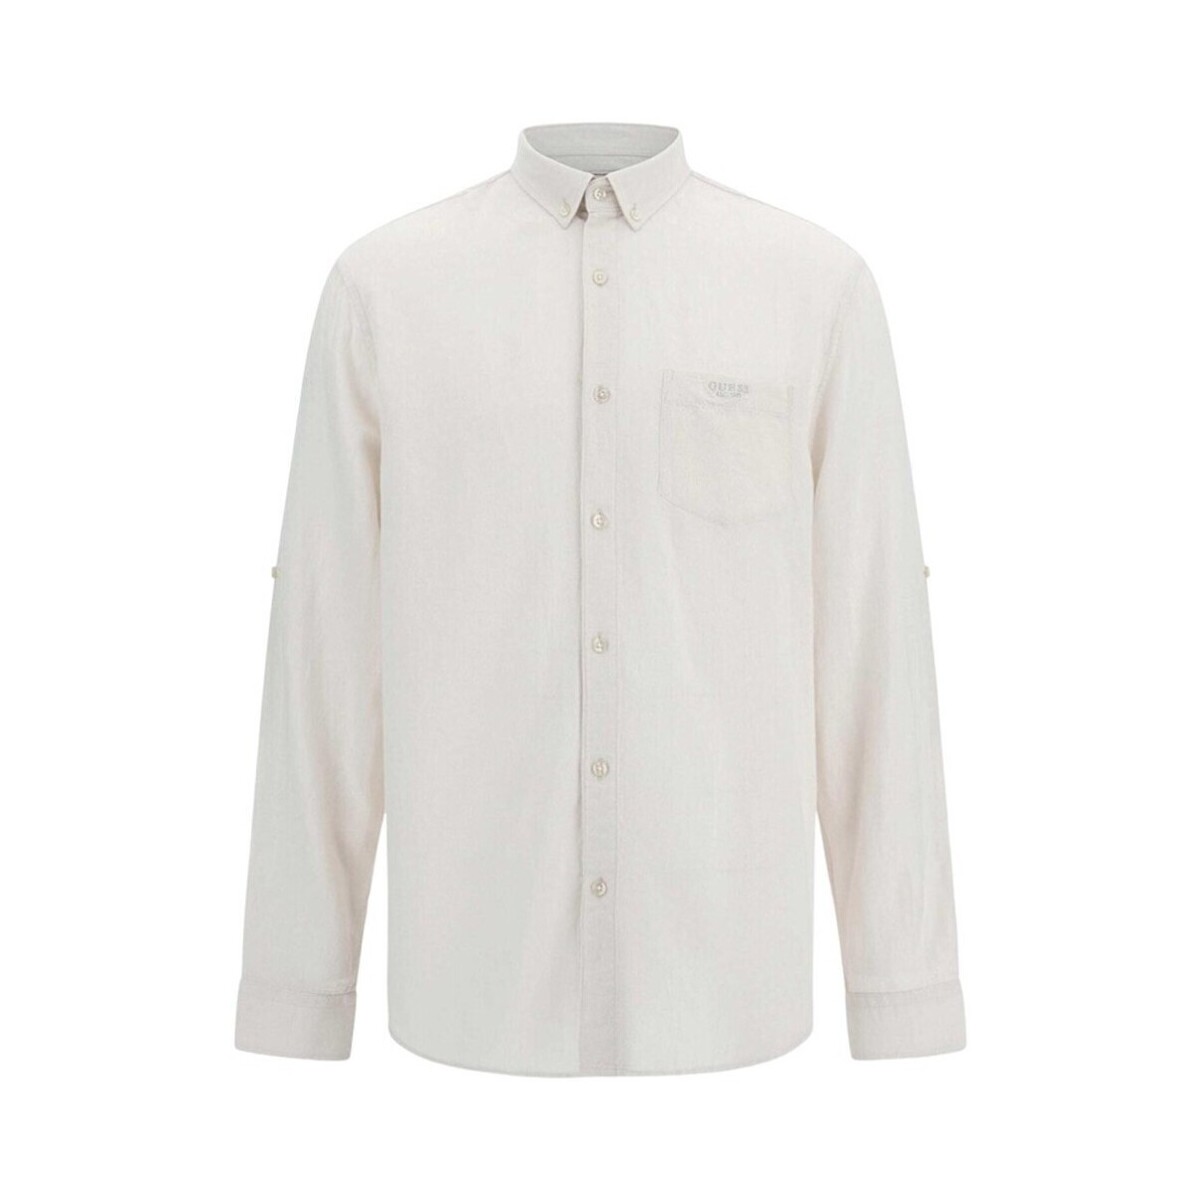 Abbigliamento Uomo Camicie maniche lunghe Guess M3GH66 WFDT0 Bianco